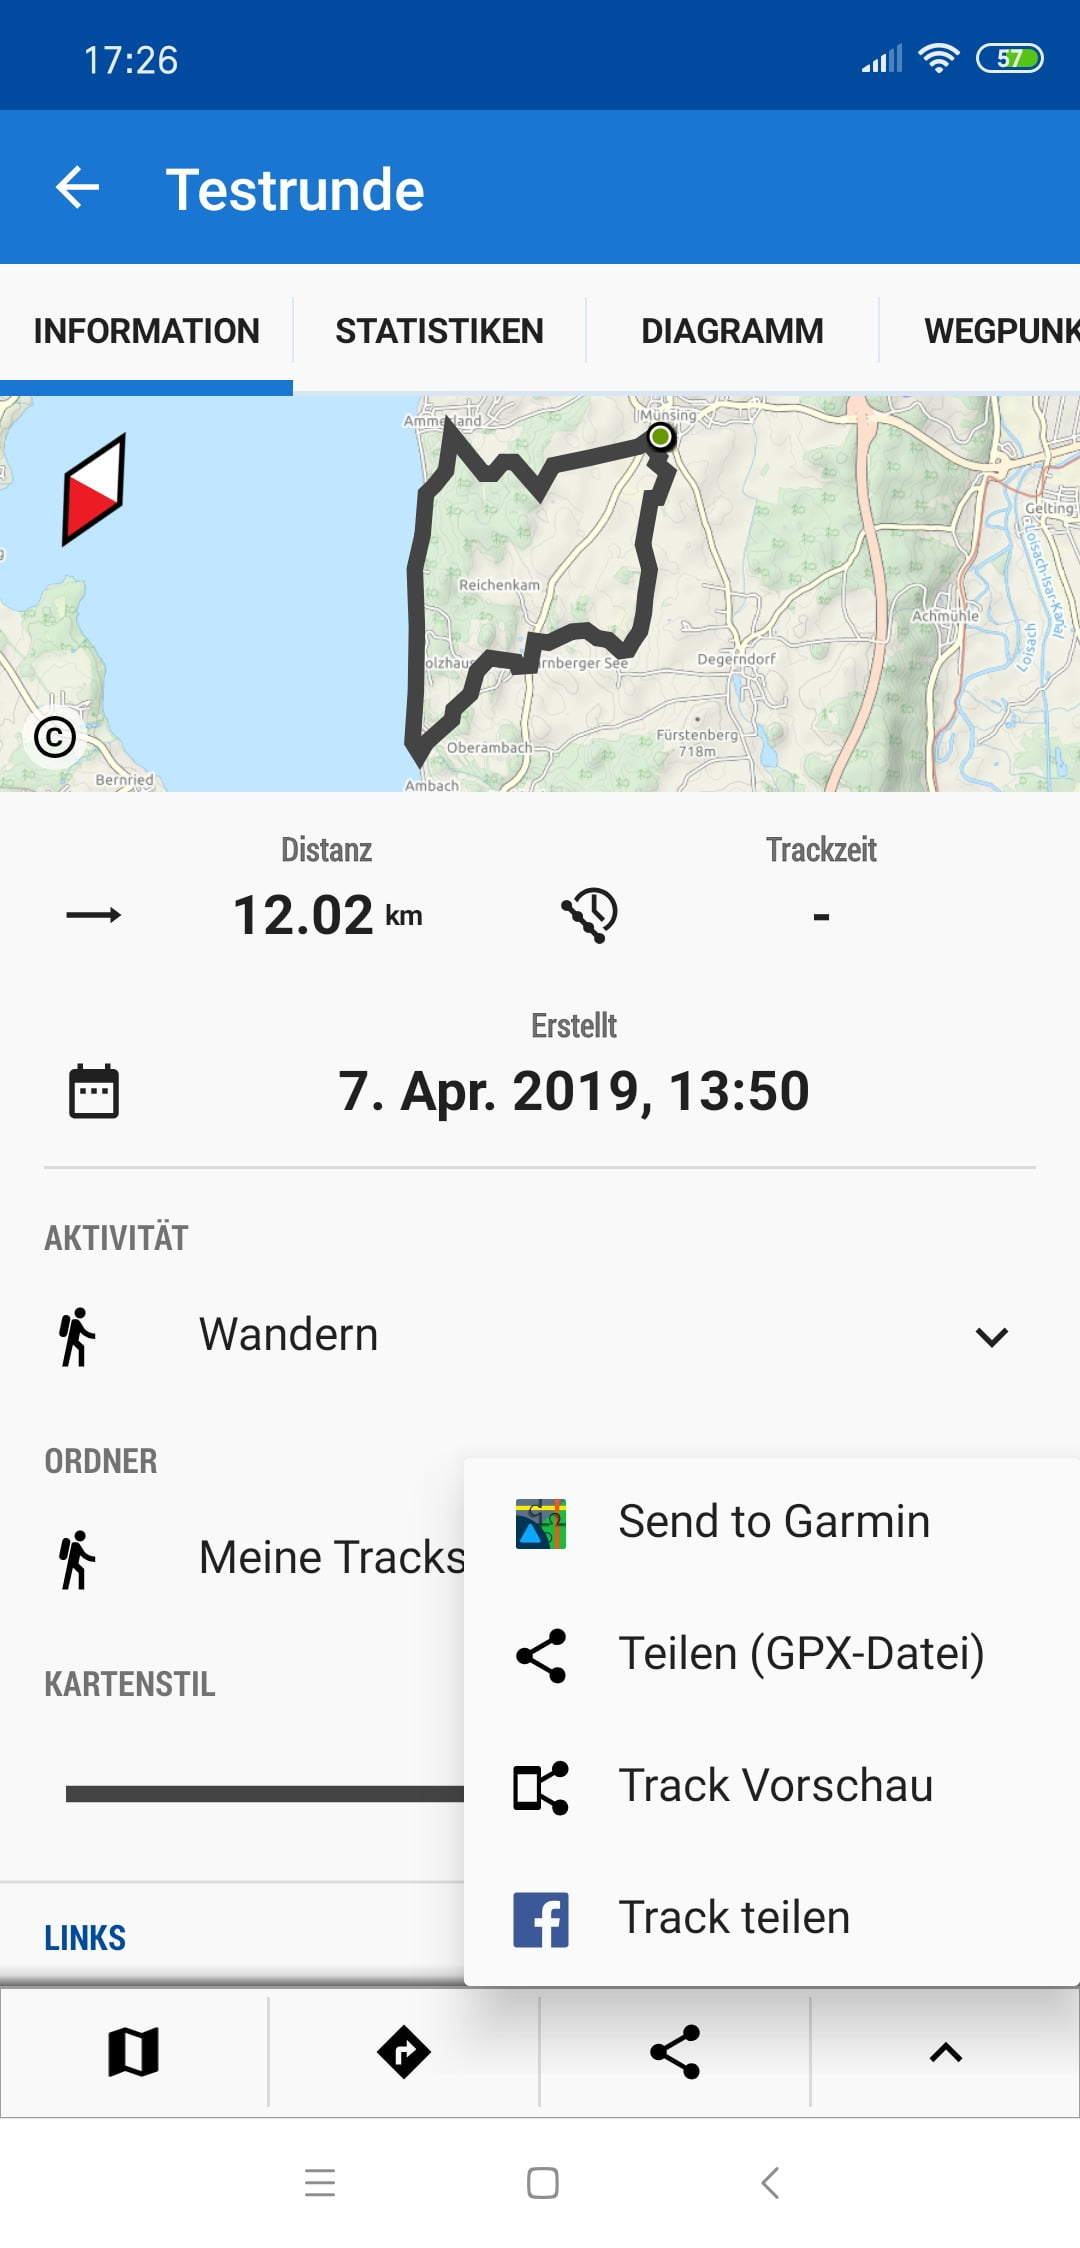 In Locus Map den Track teilen "Send to Garmin"